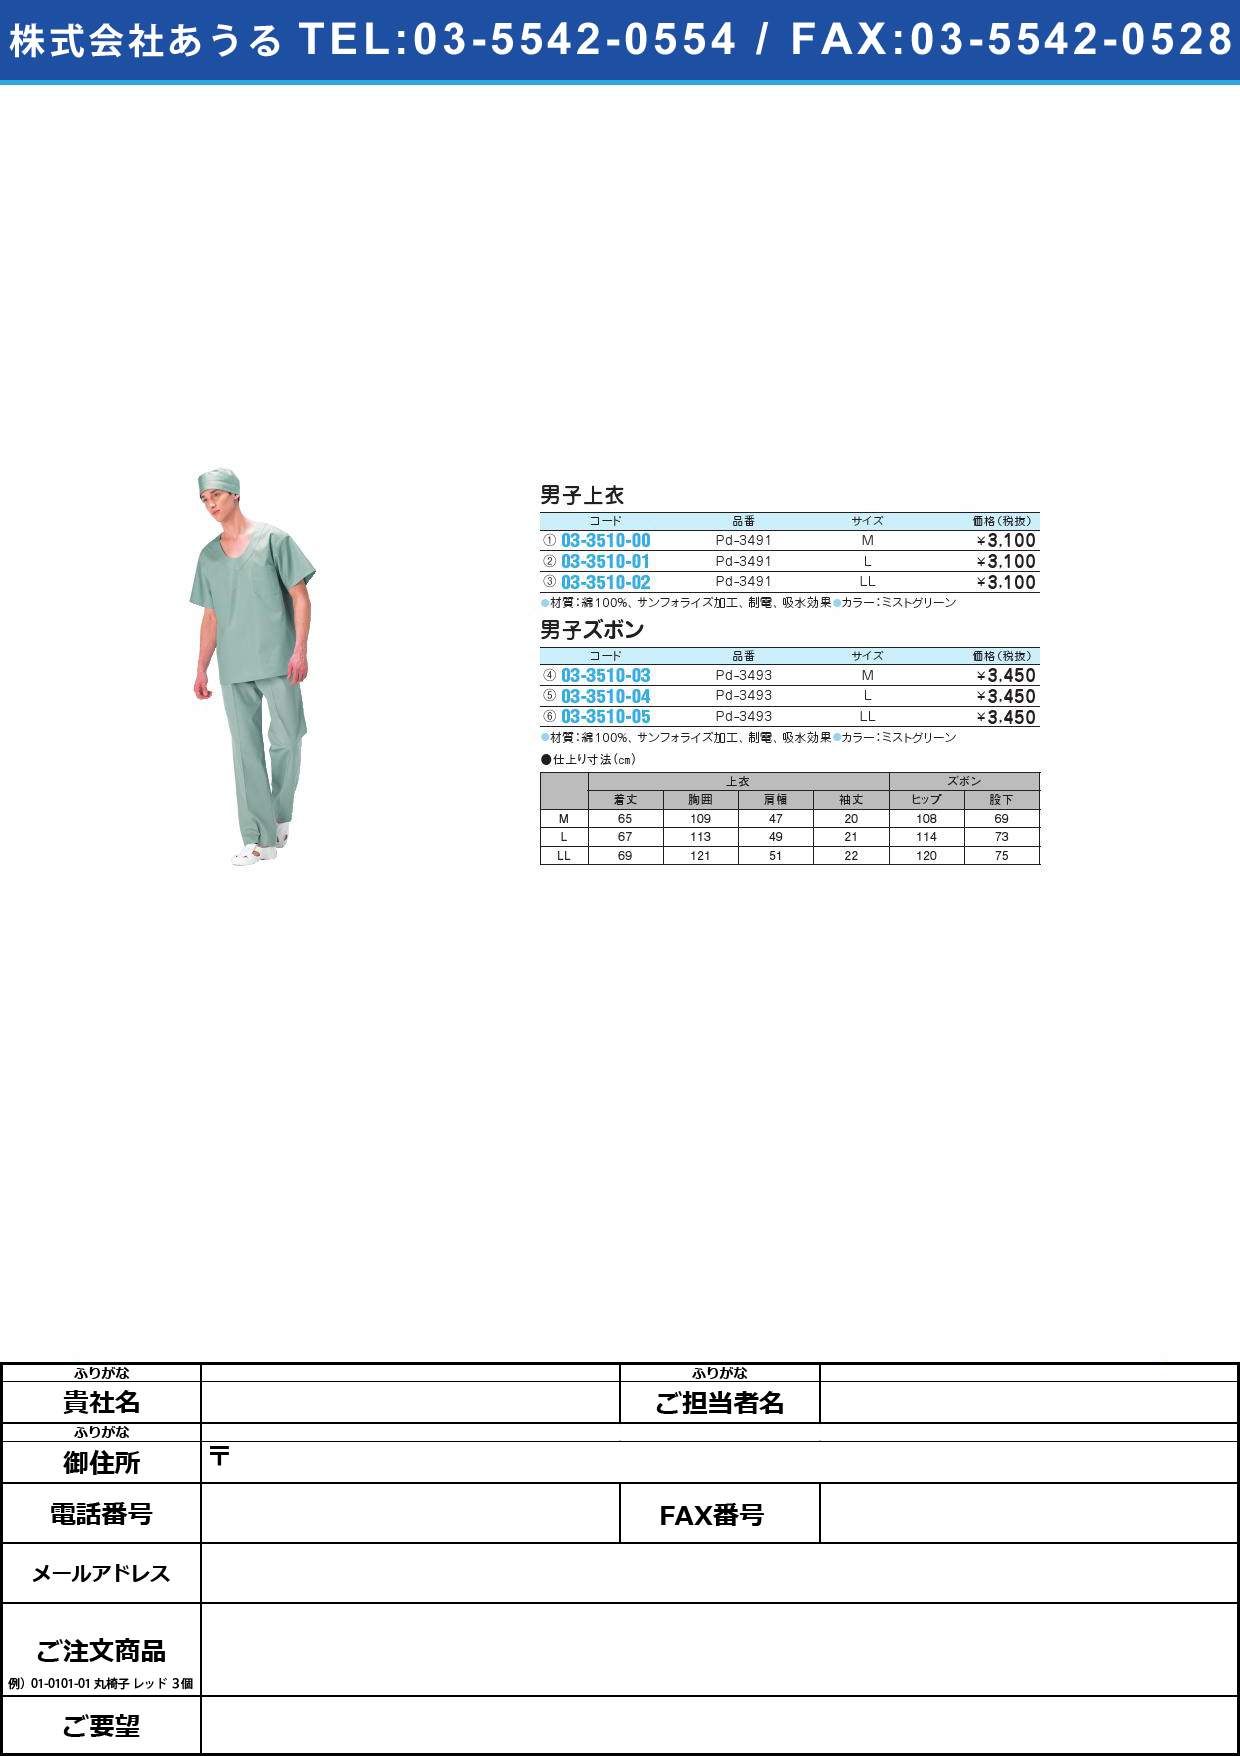 (03-3510-05)男子ズボン PD-3493(LL)ﾐｽﾄｸﾞﾘｰﾝﾀﾞﾝｼｽﾞﾎﾞﾝ(03-3510-05)【1枚単位】【2013年カタログ商品】